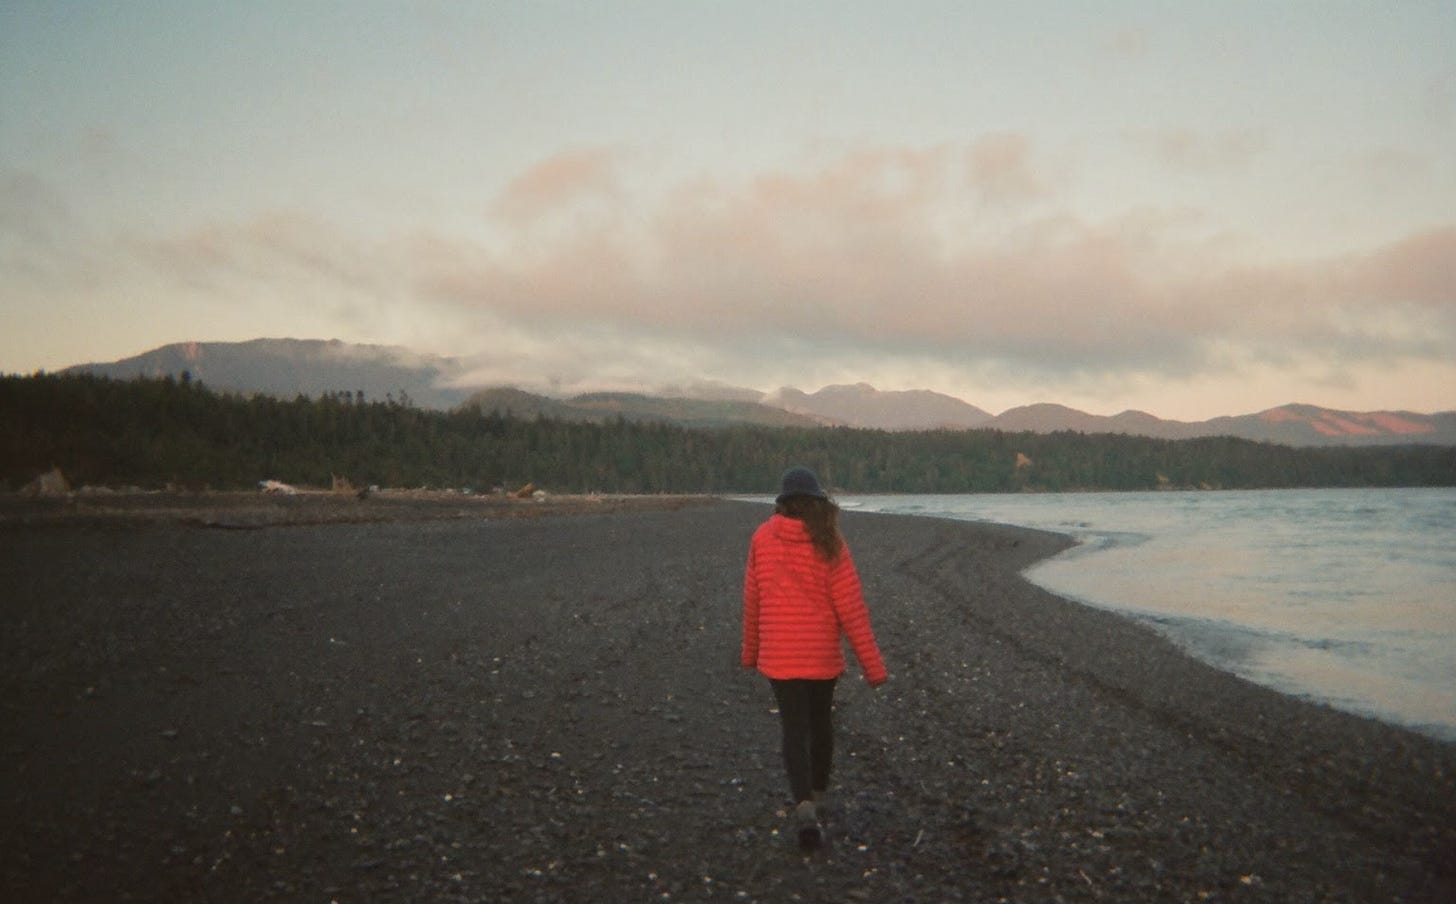 Brunette in red jacket walks on northwest beach